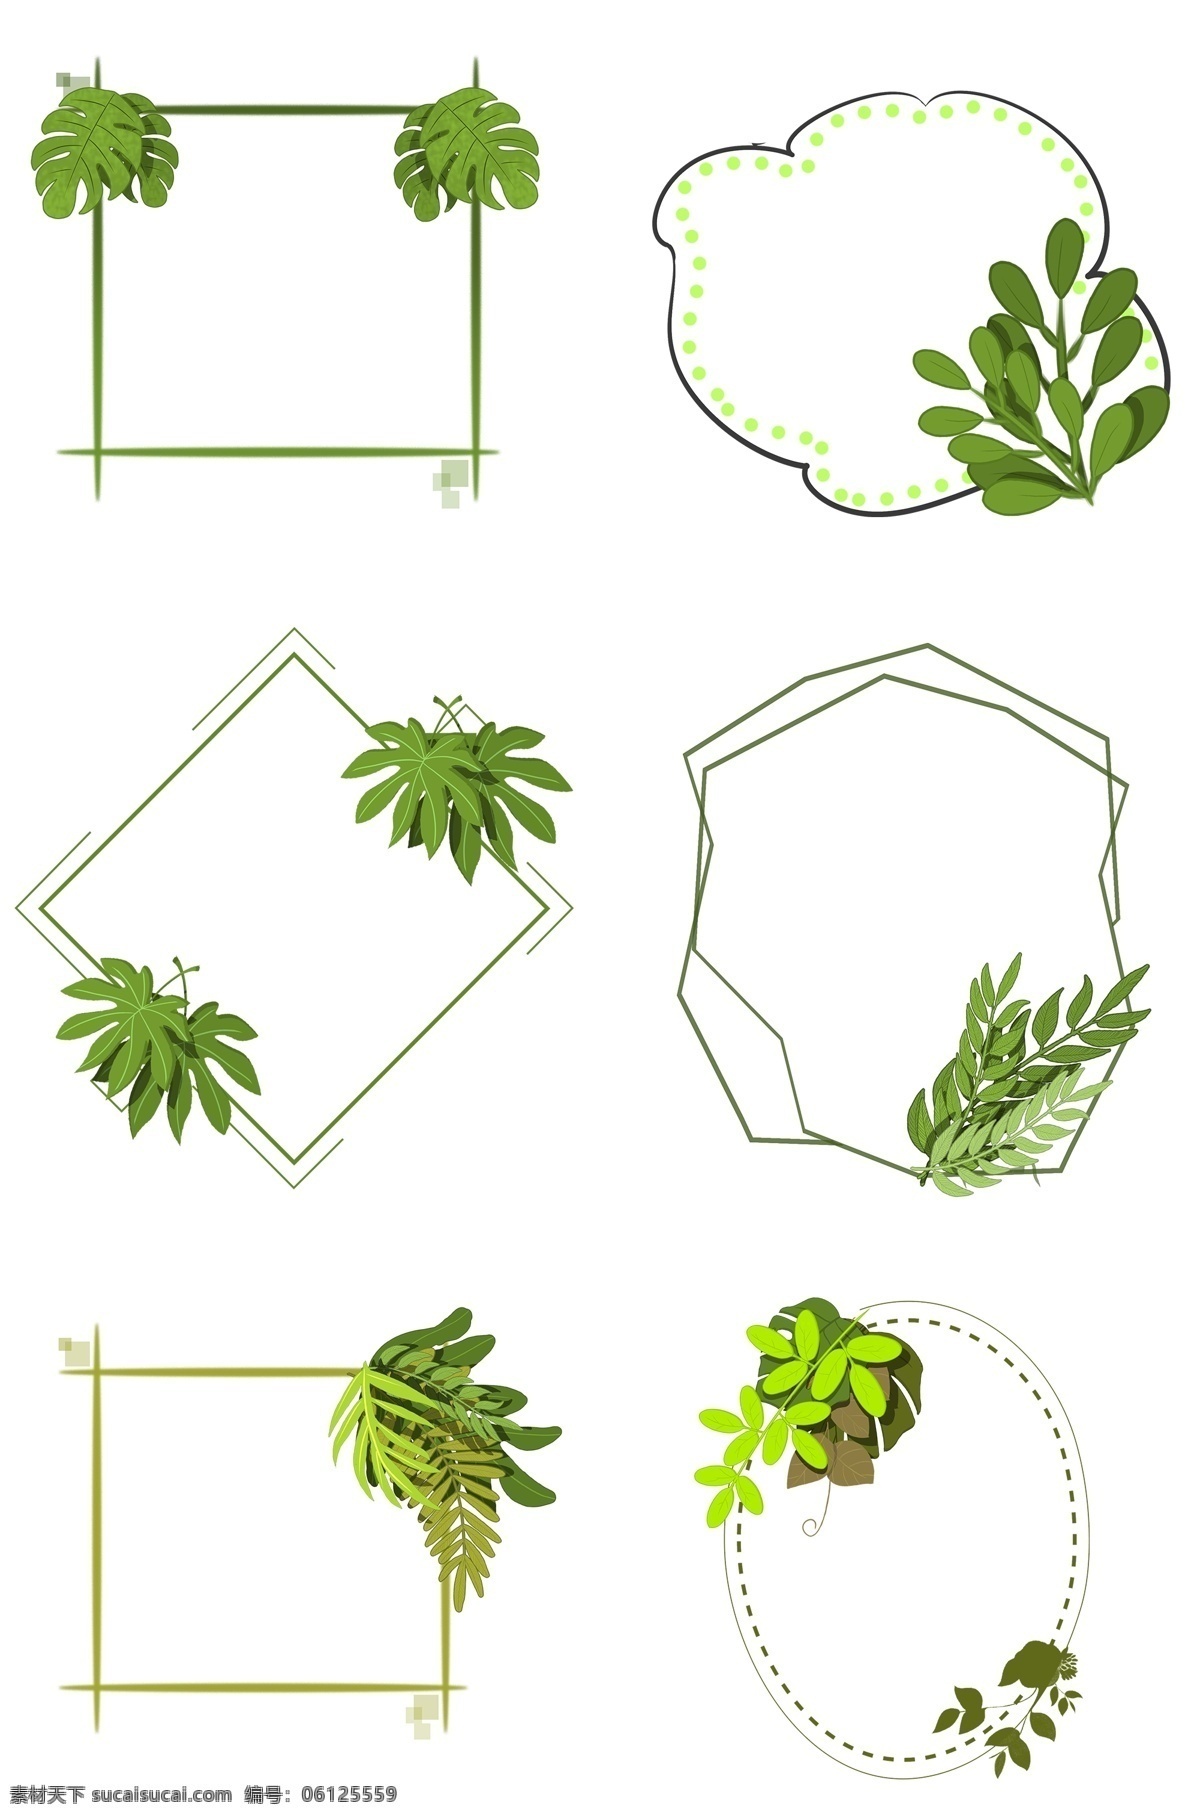 平涂 绿色植物 组合 叶子 小 插图 简约 树叶 树枝 绿色 装饰 手绘扁平风格 多种植物 植物 大 大自然 小清新 夏天 手绘 春天 植被